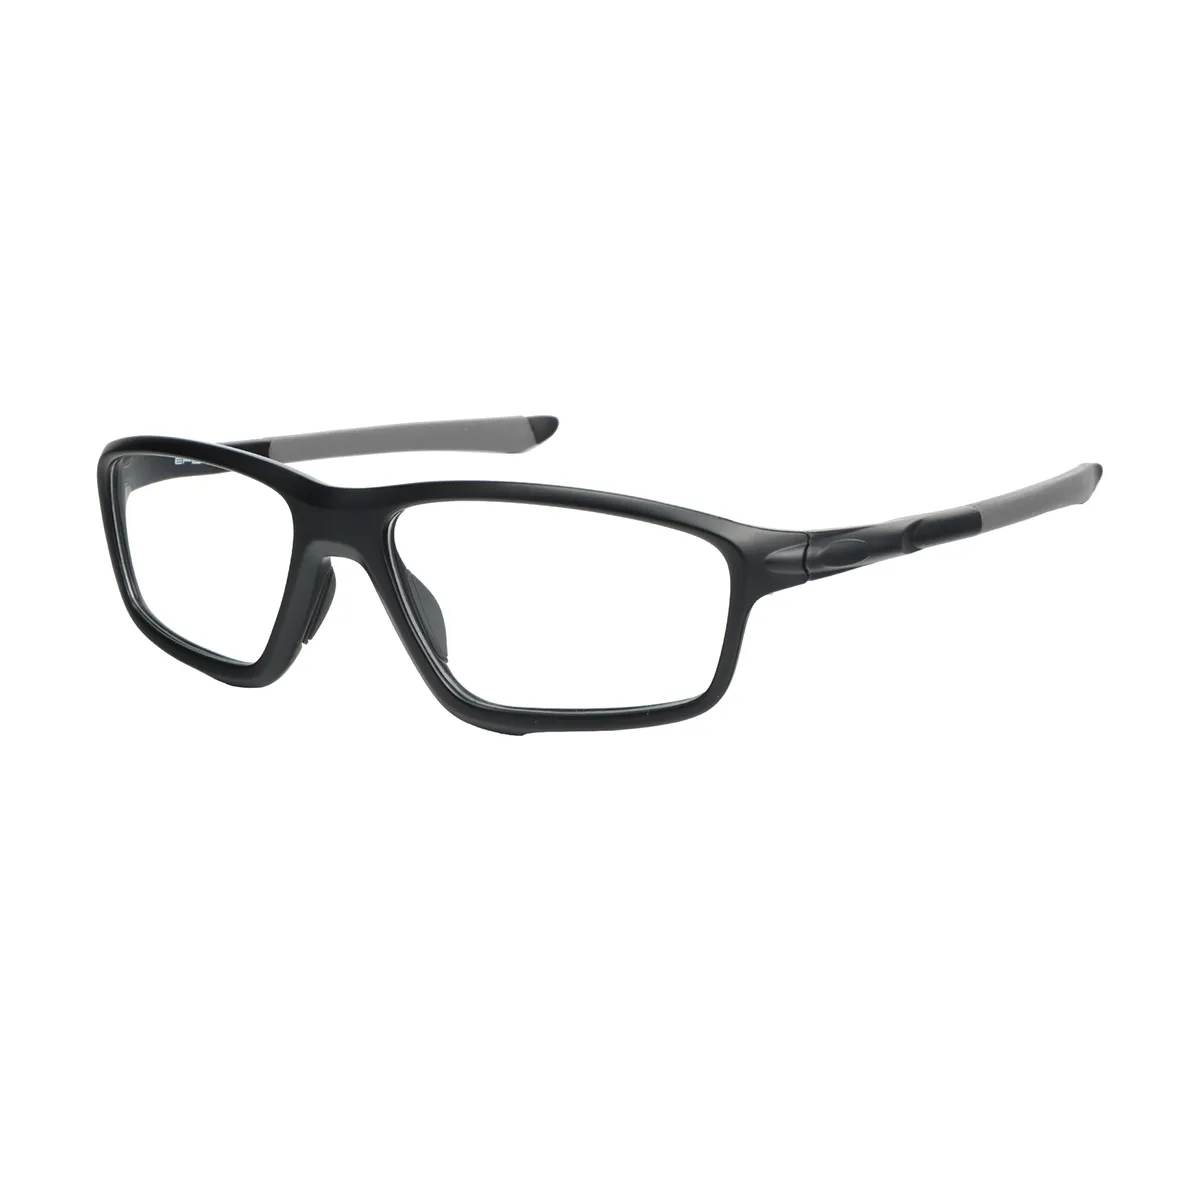 George - Rectangle Black-Gray Glasses for Men & Women